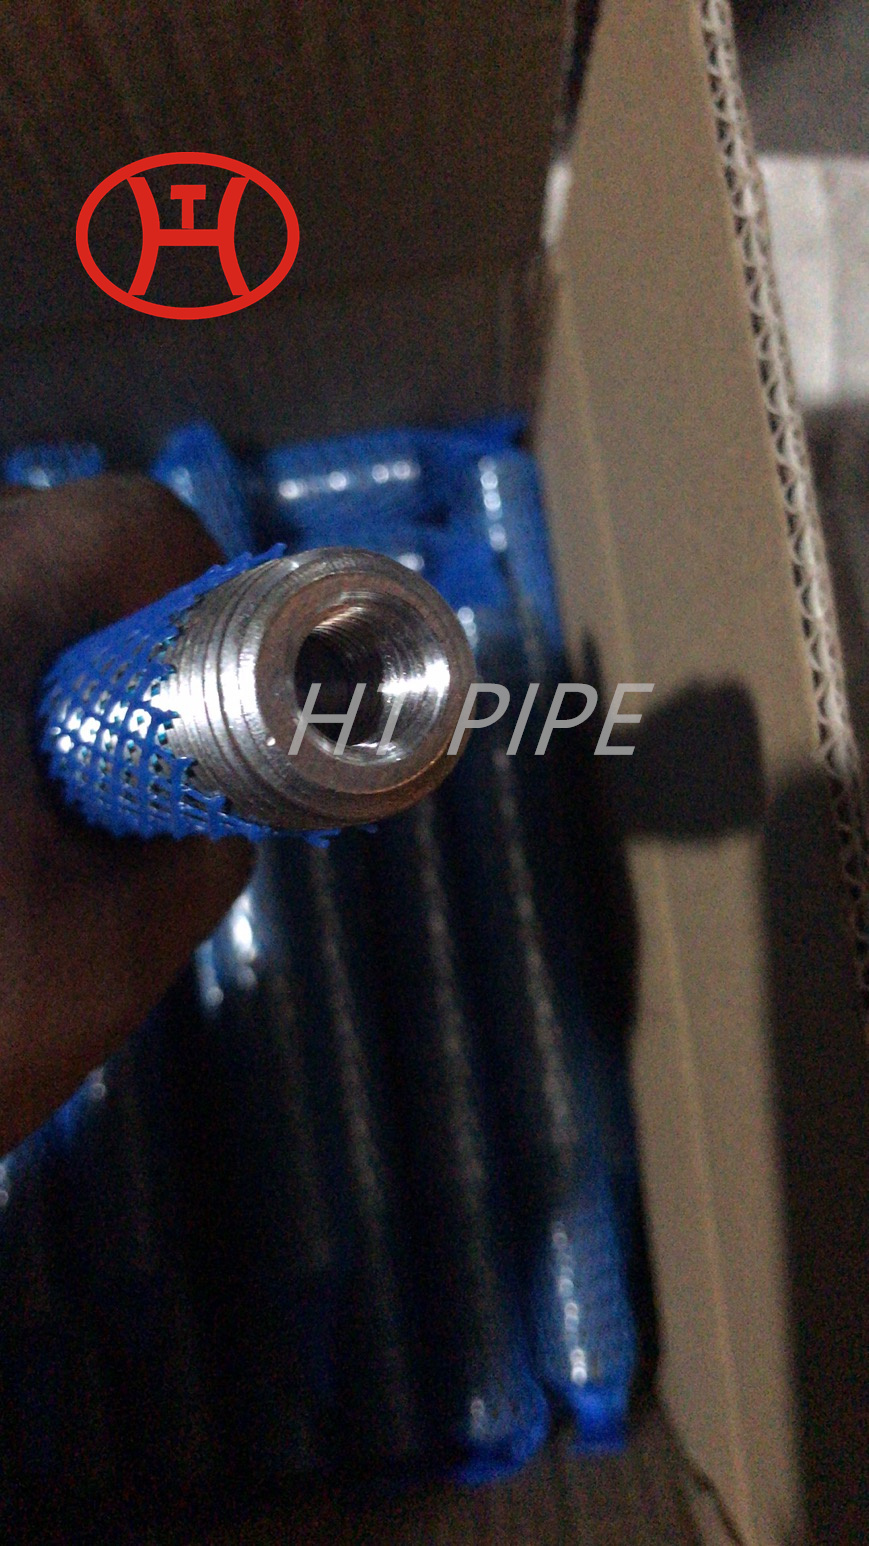 Super Duplex stainless steel S32750 1.4410 F53 thread rod